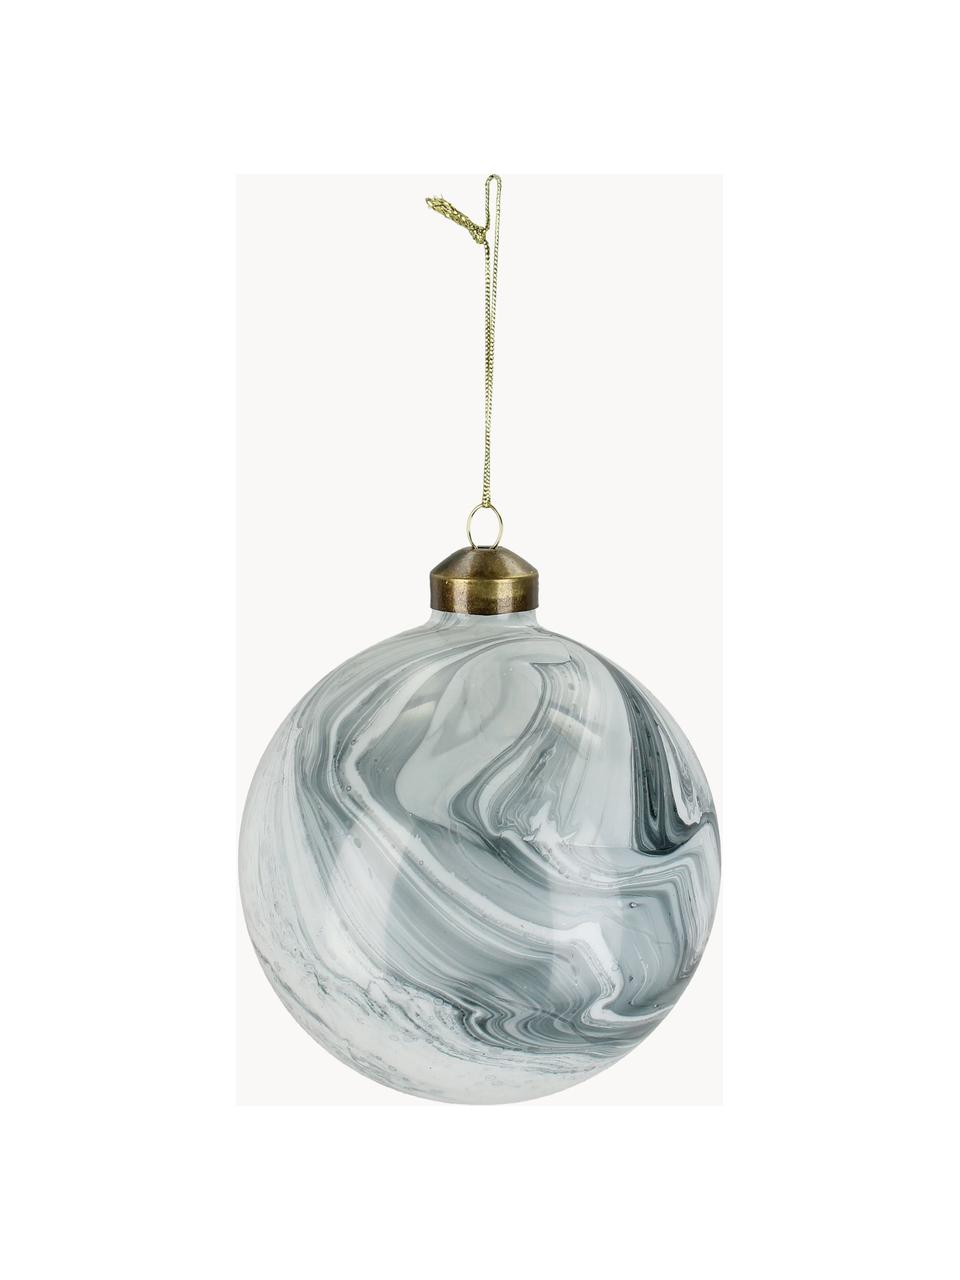 Weihnachtskugeln Marble in Marmoroptik, 6 Stück, Glas, Graublau, Weiß, hell, Ø 10 cm